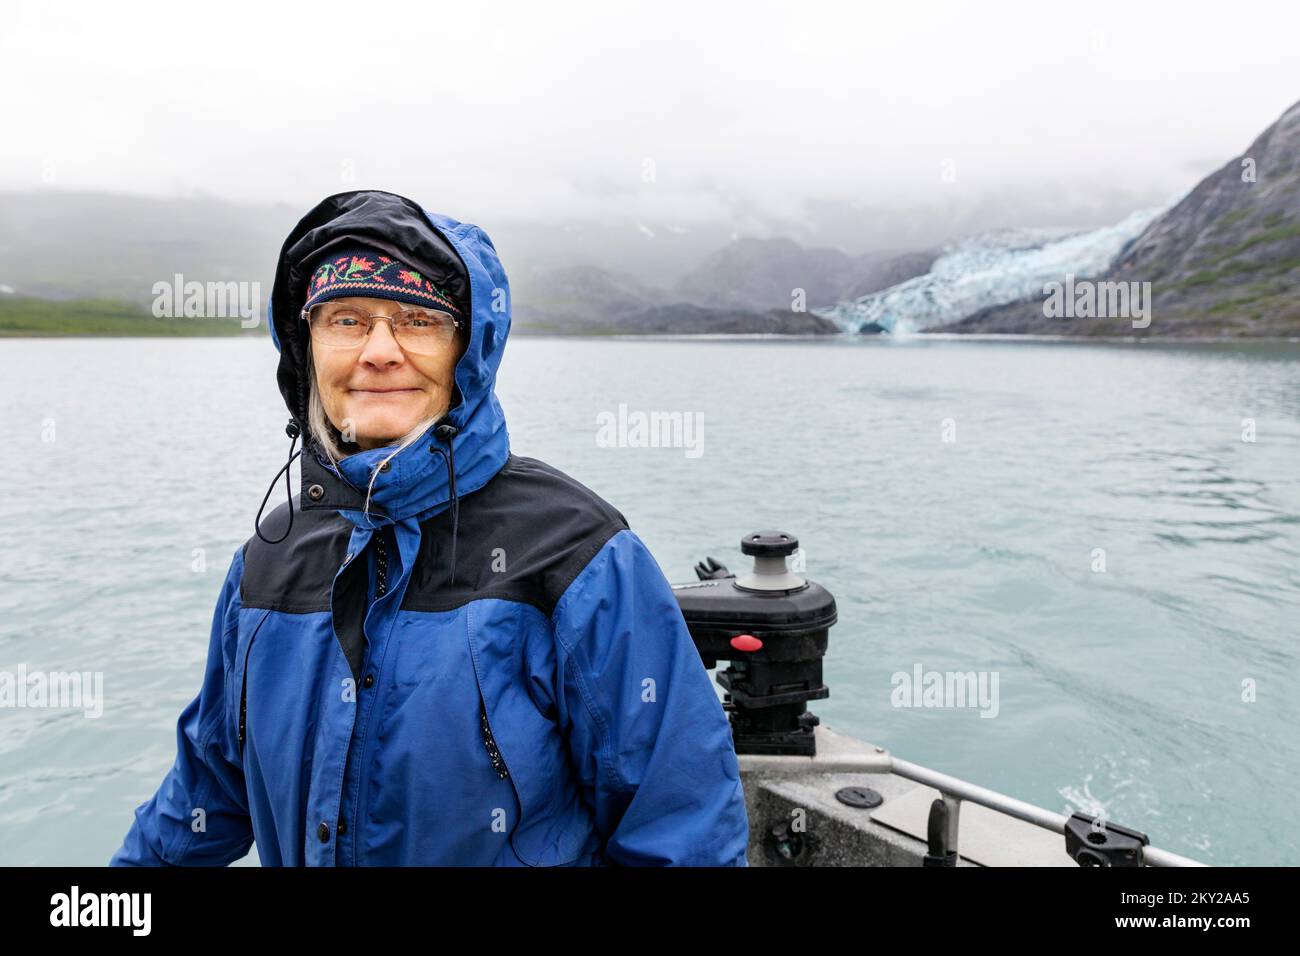 Turista senior; barco de alquiler visitando el glaciar Shoup; bahía Shoup; Valdez Arm; Prince William Sound; Valdez; Alaska; EE.UU Foto de stock